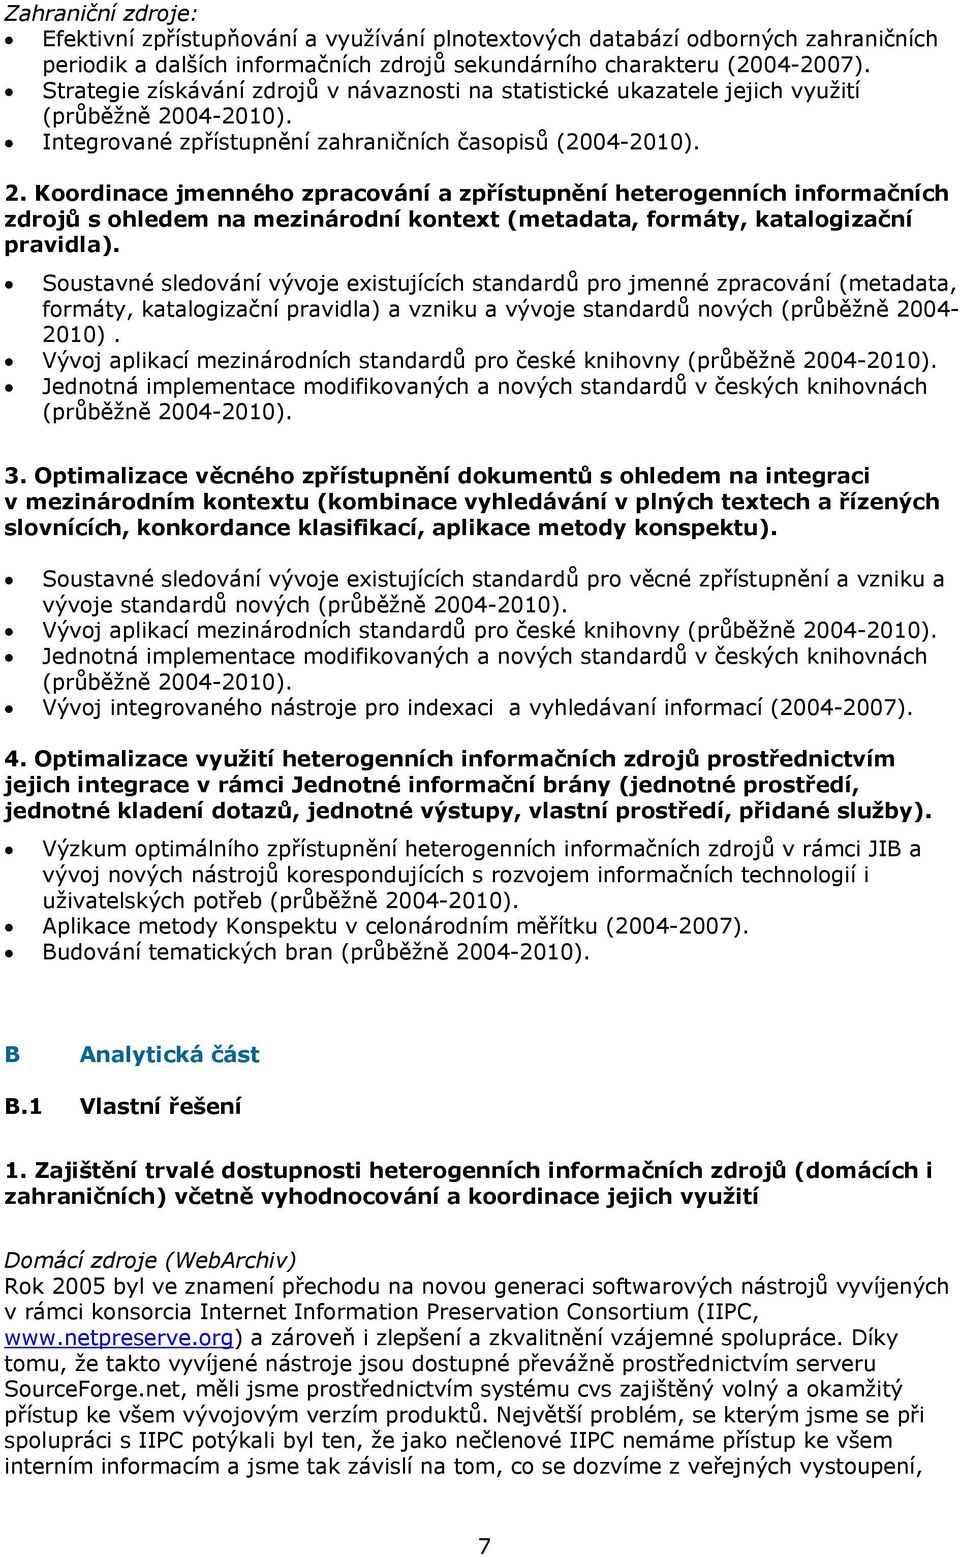 04-2010). Integrované zpřístupnění zahraničních časopisů (2004-2010). 2.